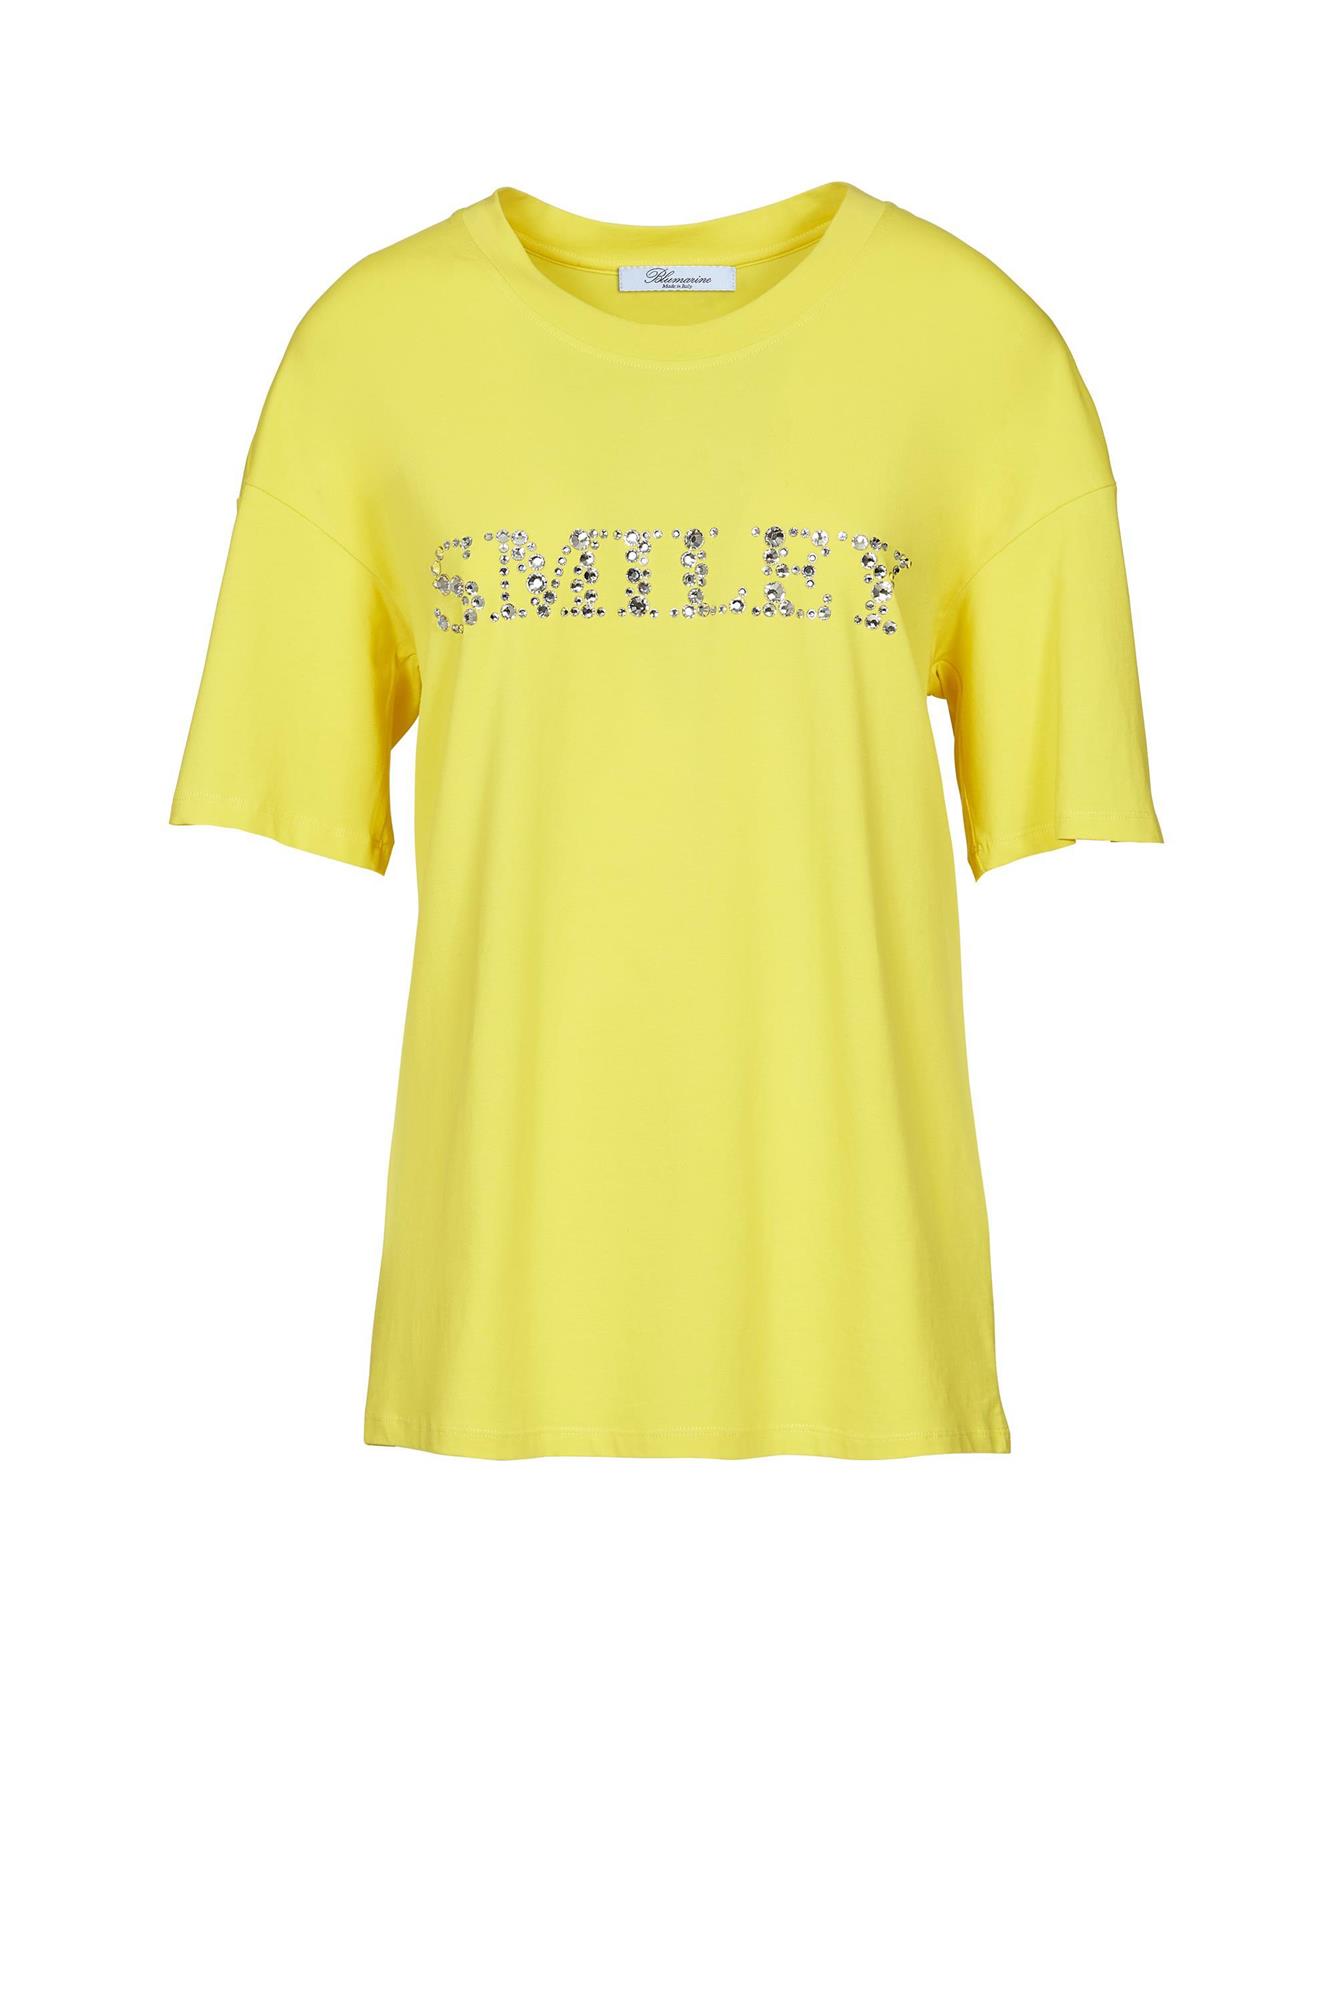 Camiseta con mensaje "Smiley" de Blumarine